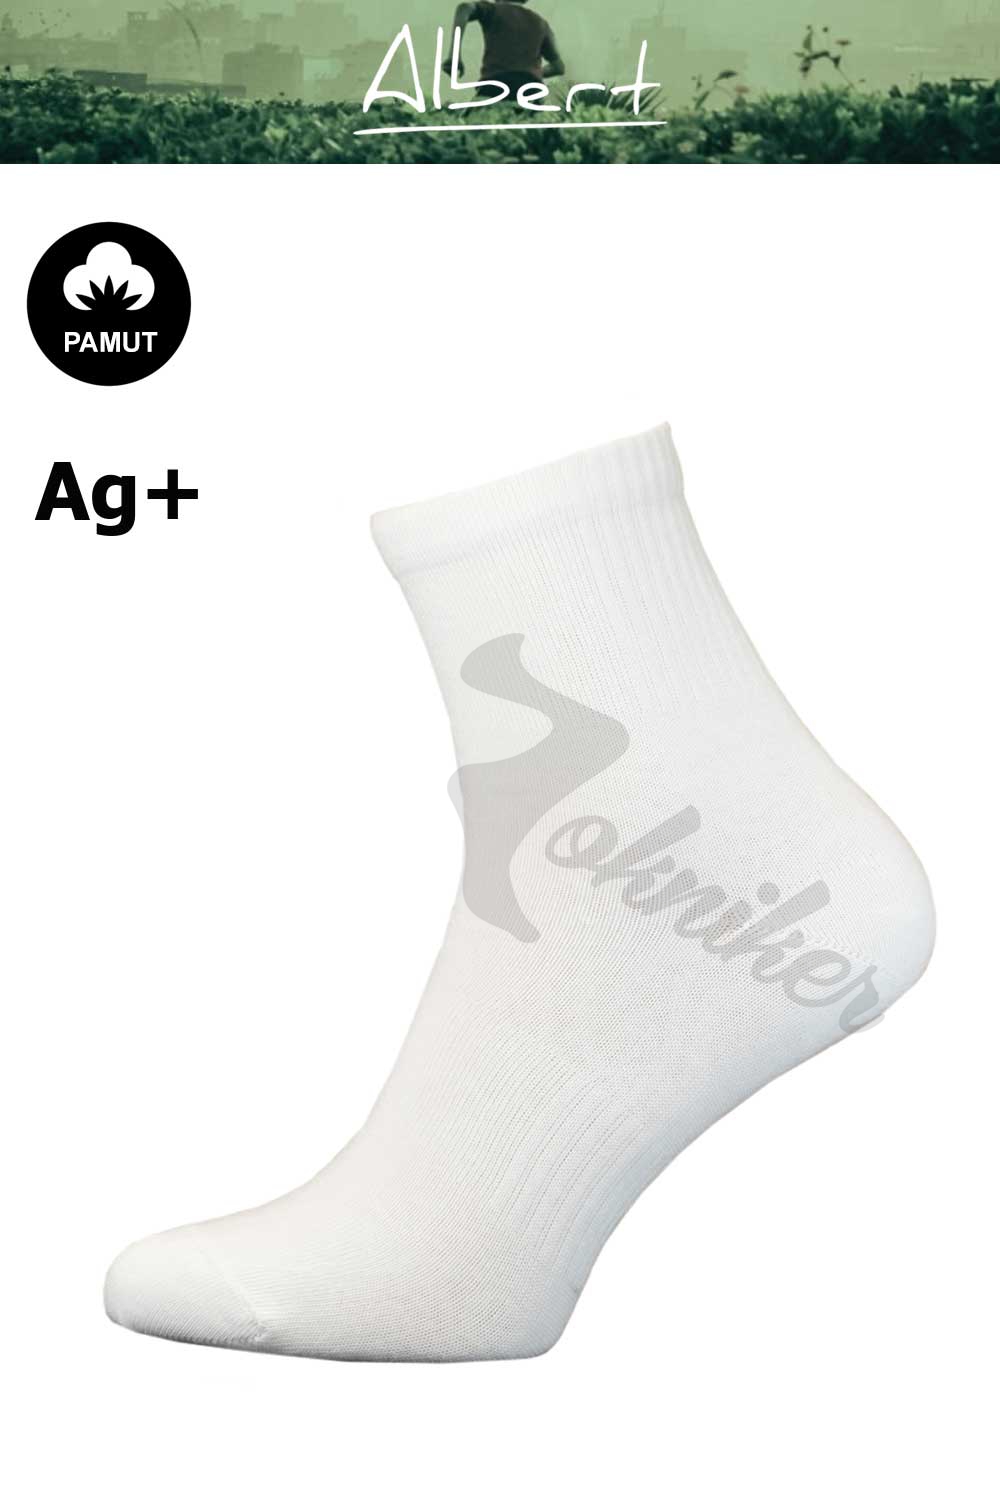 Albert Sport pamut női félboka zokni 36-38